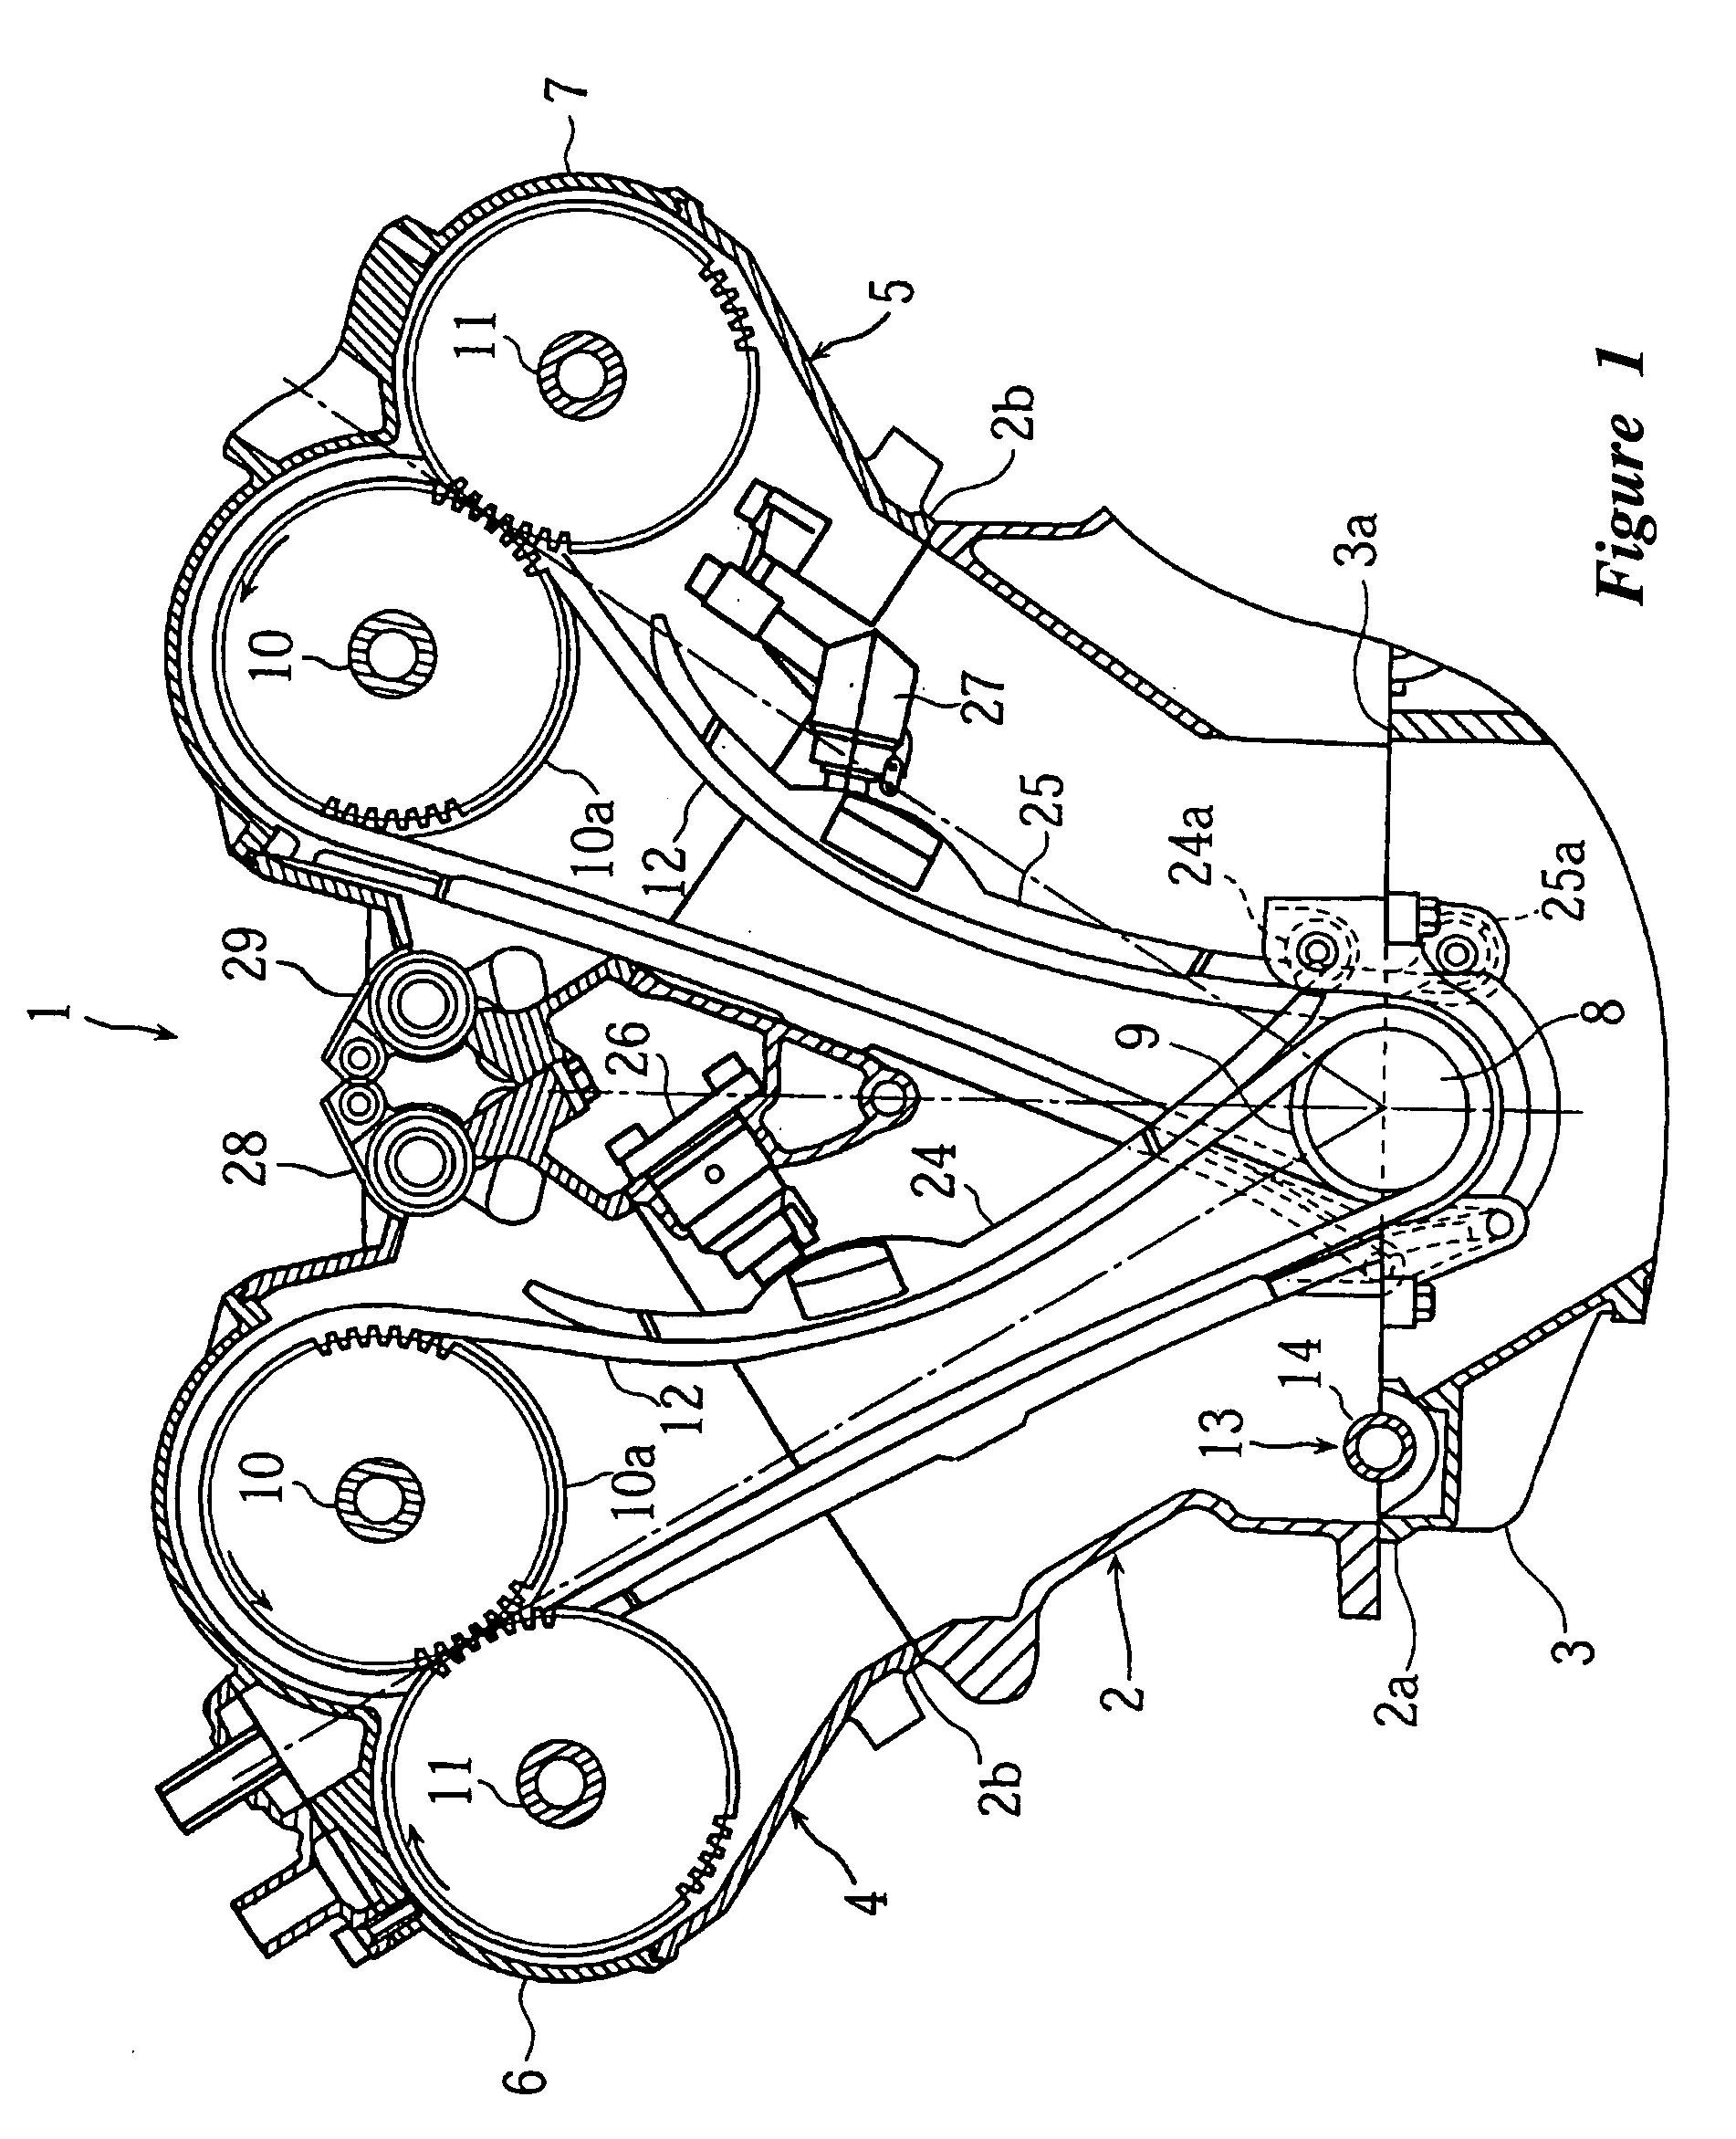 Balancer shaft arrangement for engine